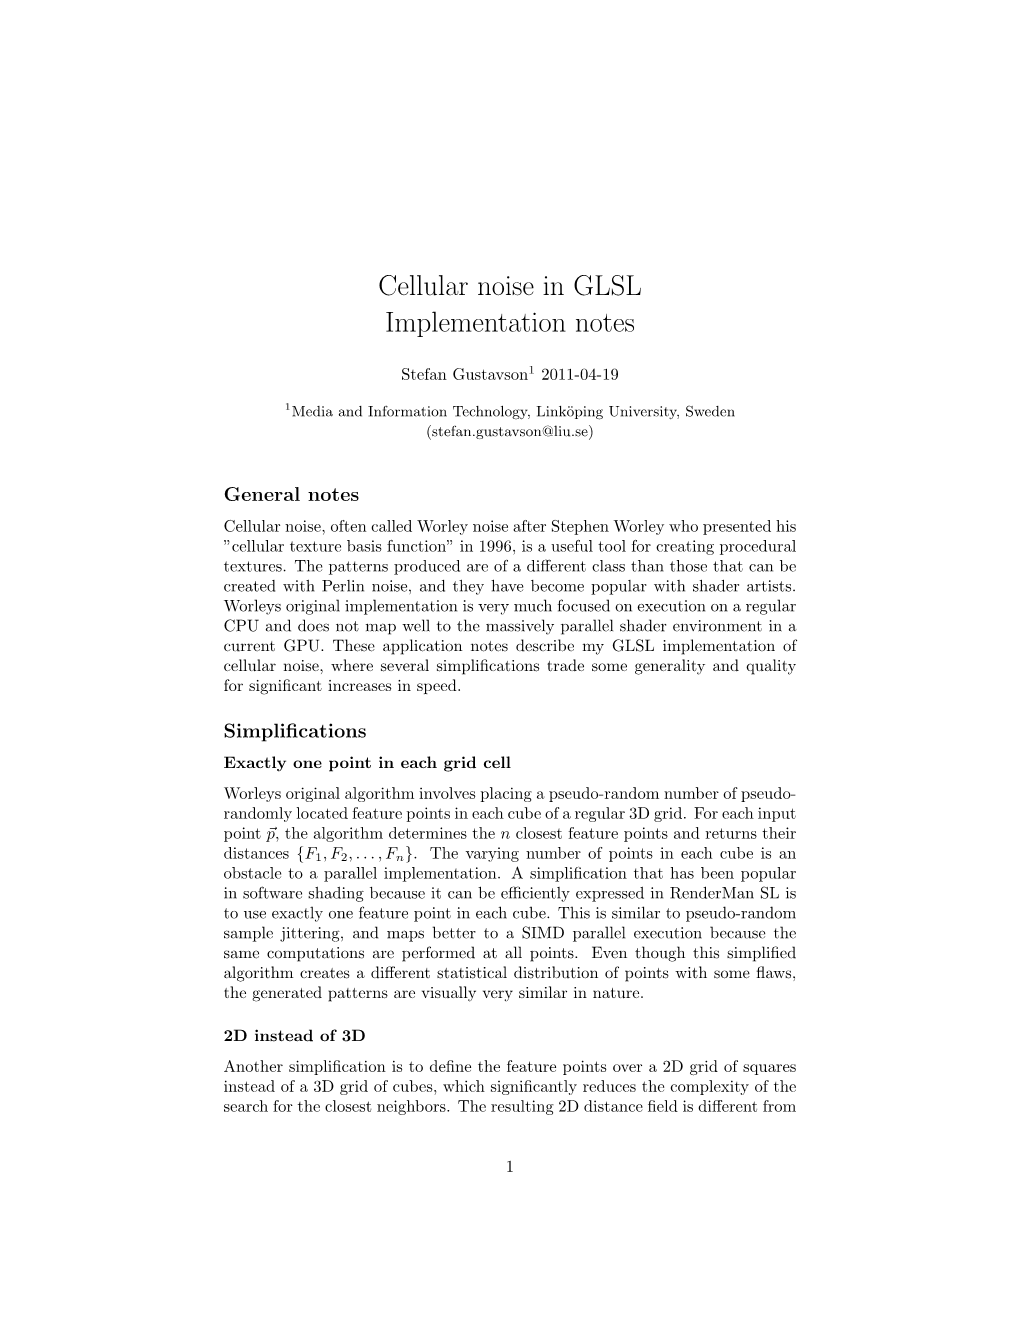 Cellular Noise in GLSL Implementation Notes